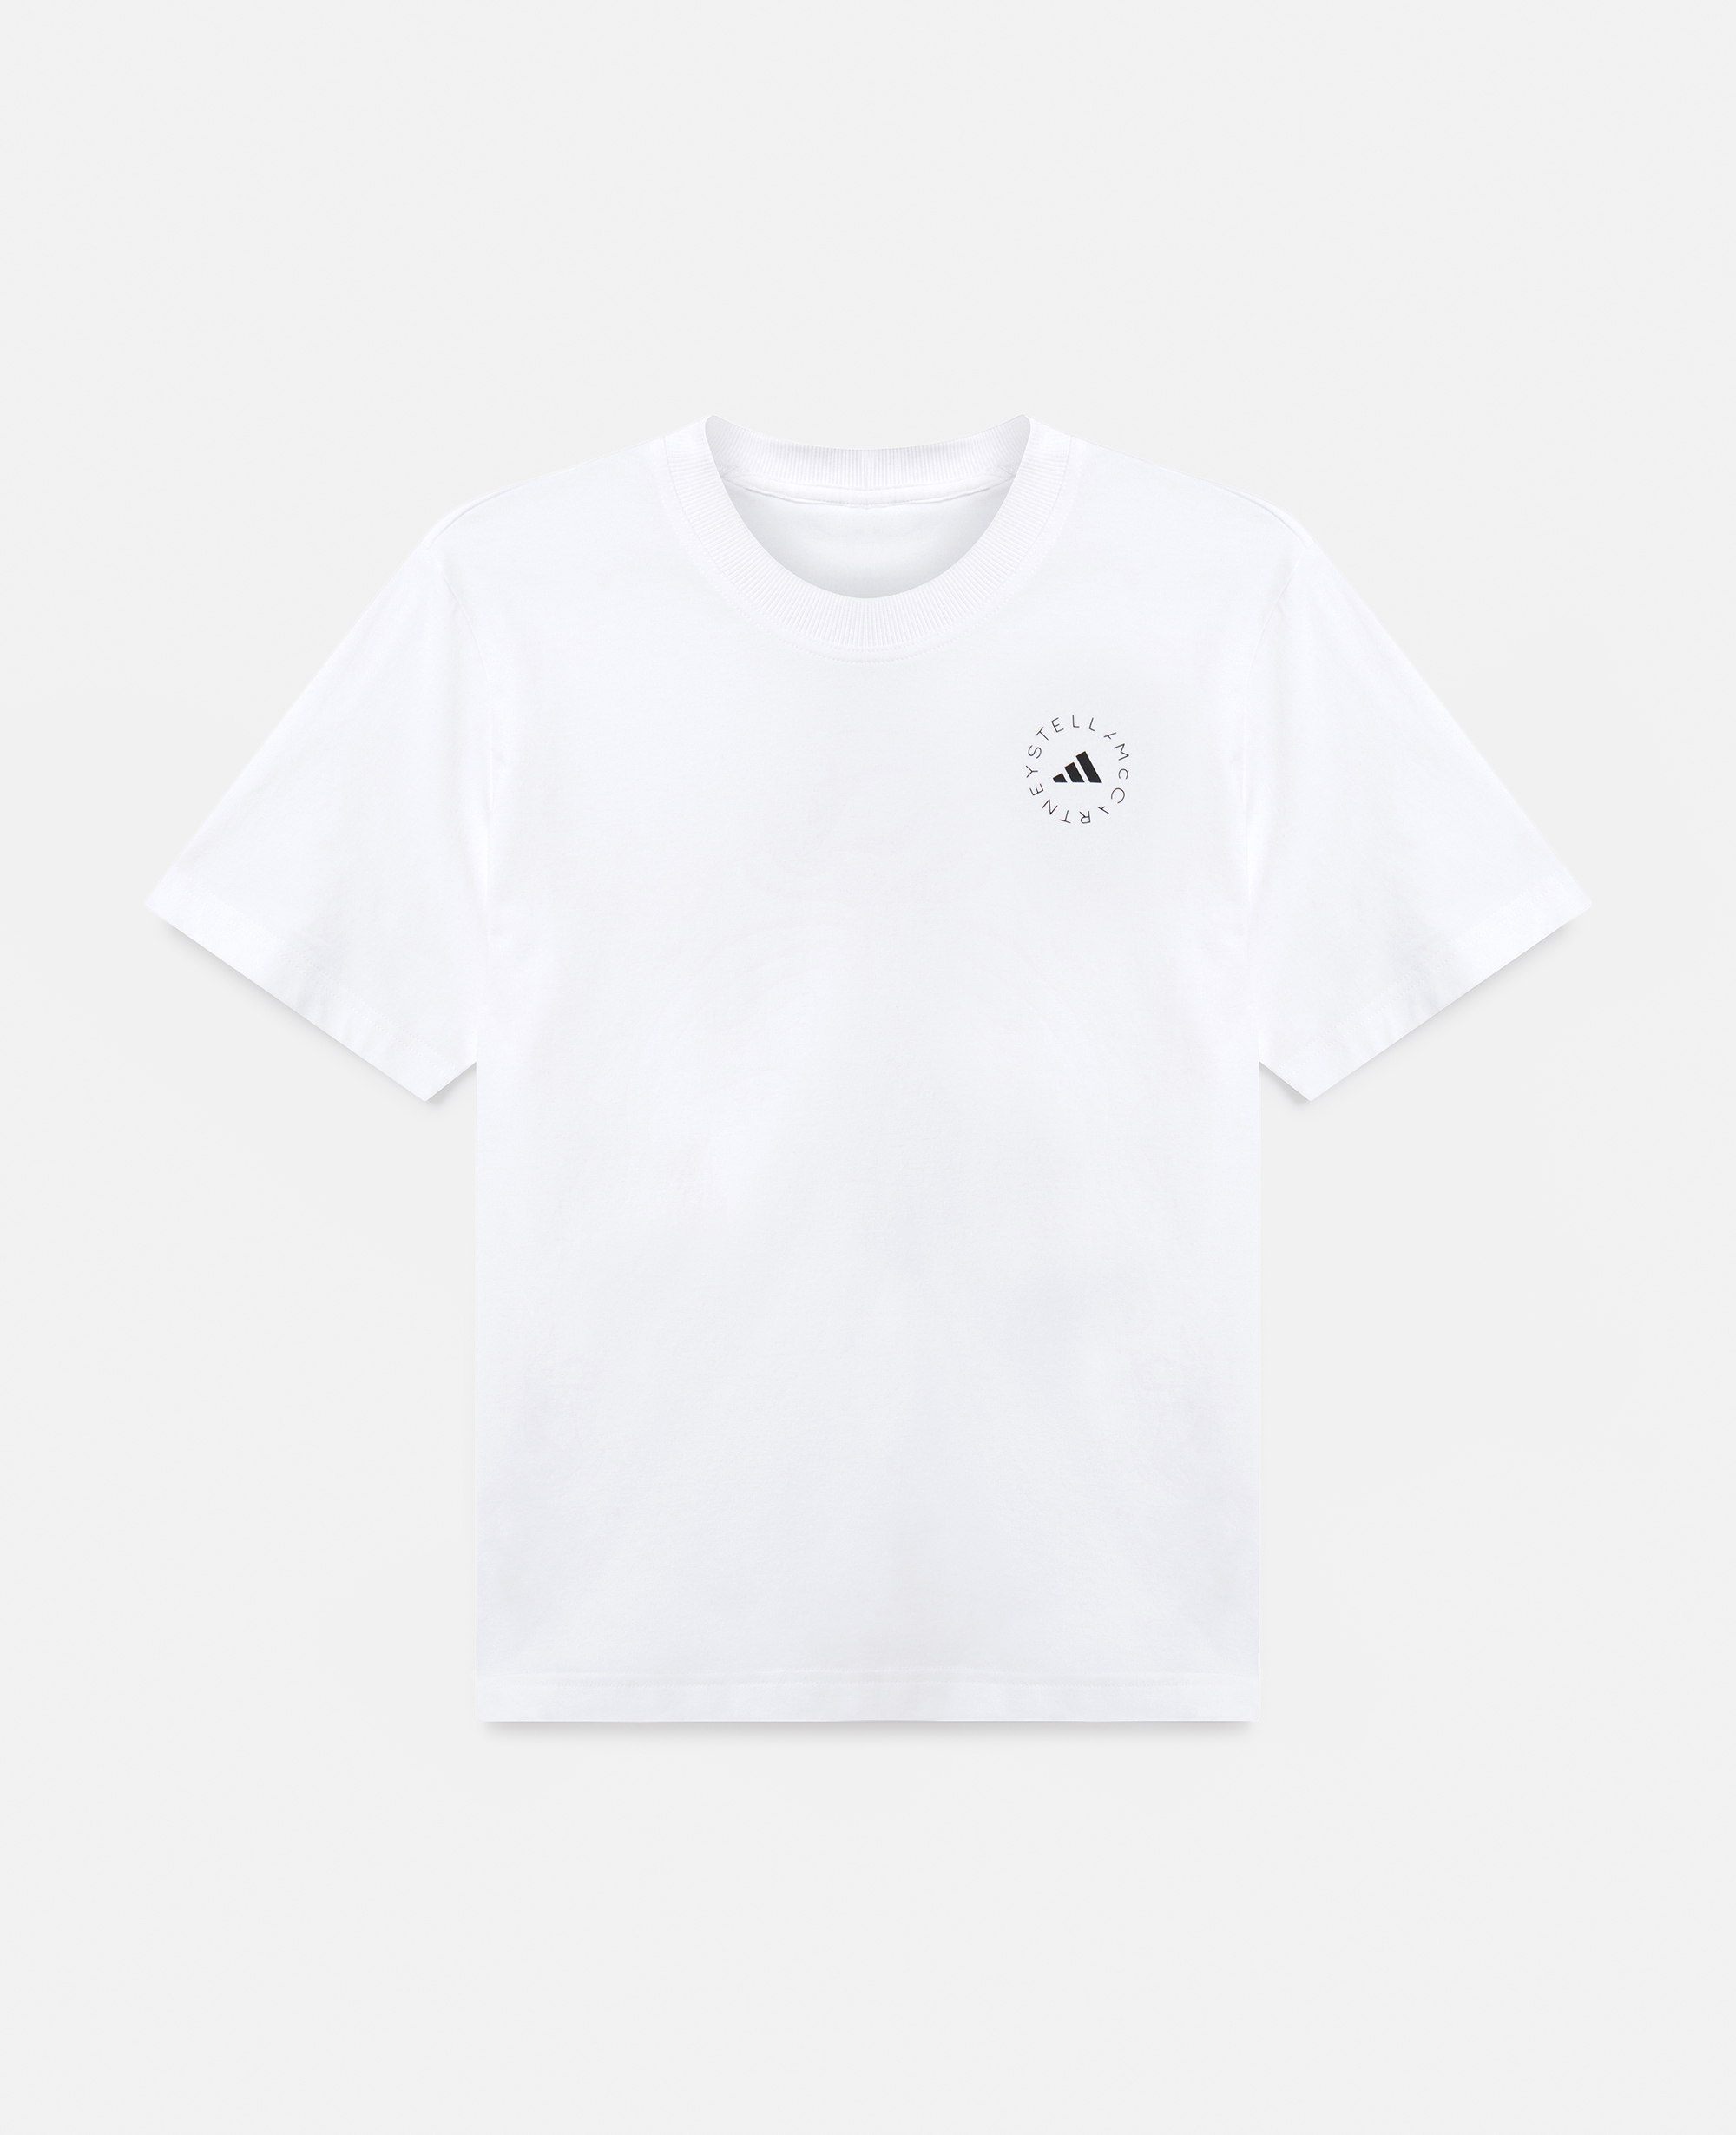 stella mccartney - truecasuals logo t-shirt, woman, white, size: xs